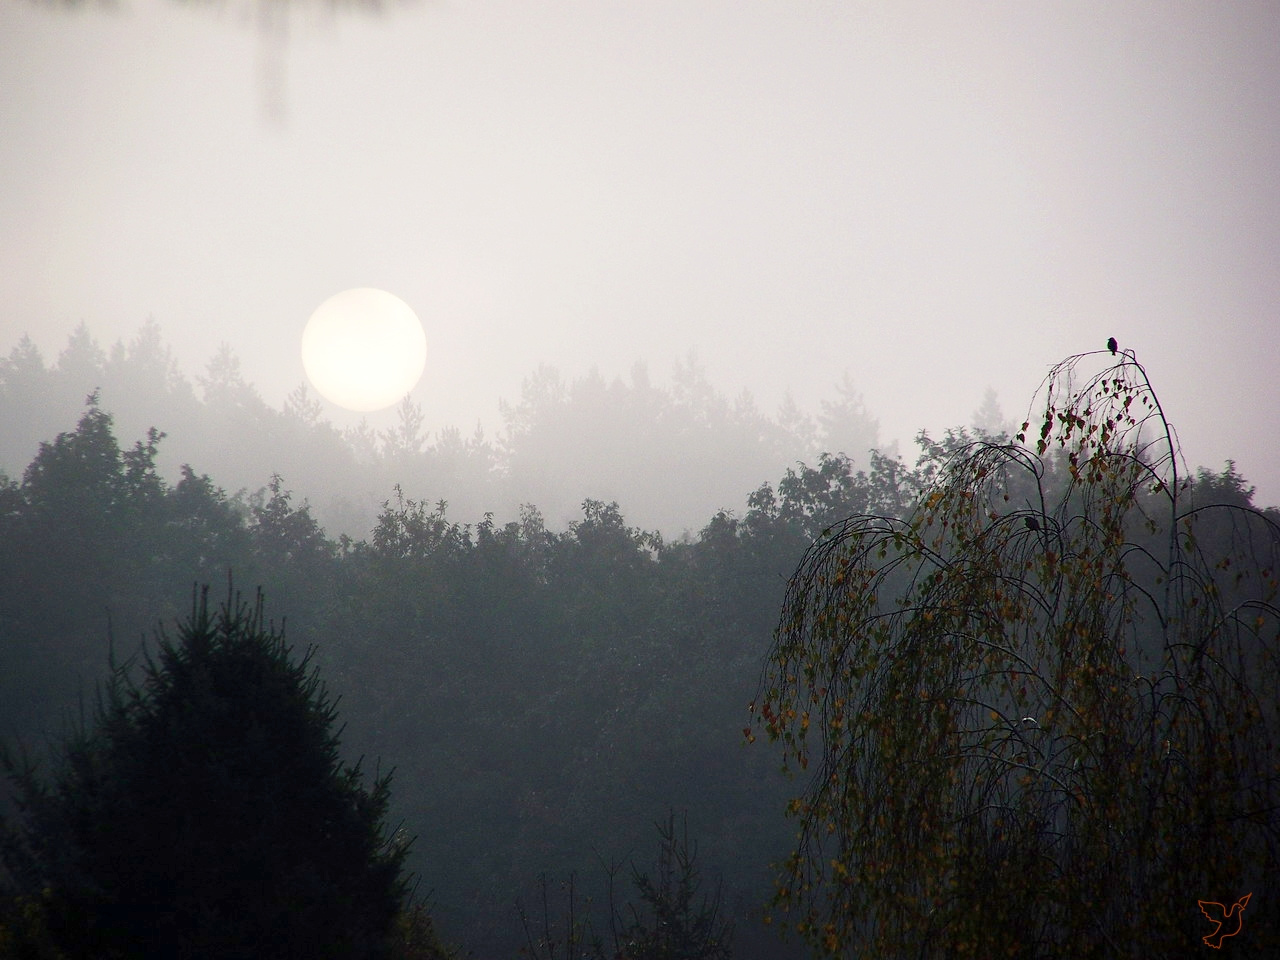 reggeli fények, egy ködös napfelkelte